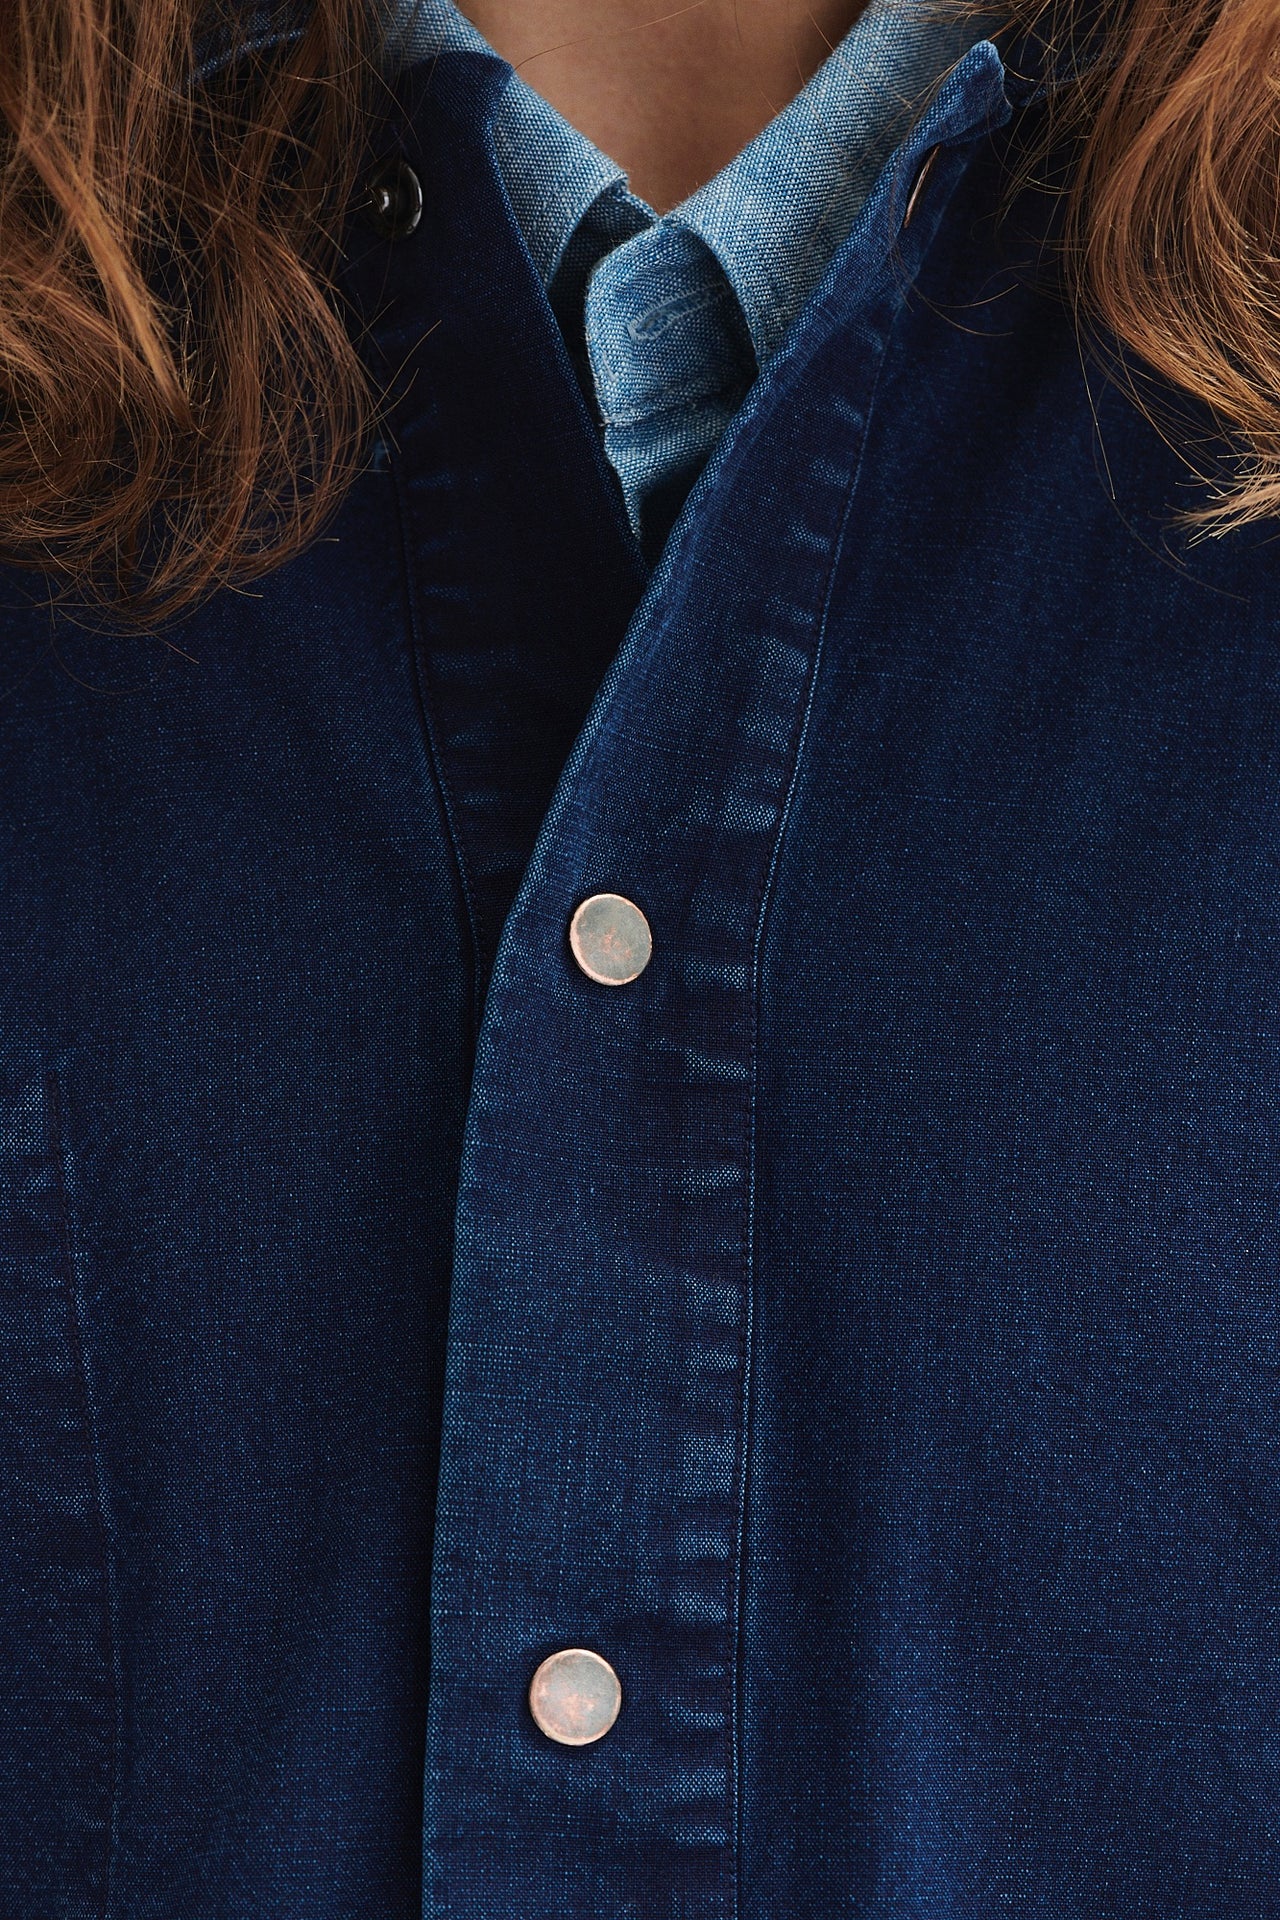 スナップボタン付きブルーの日本製コットンデニムのオーバーシャ​​ツ